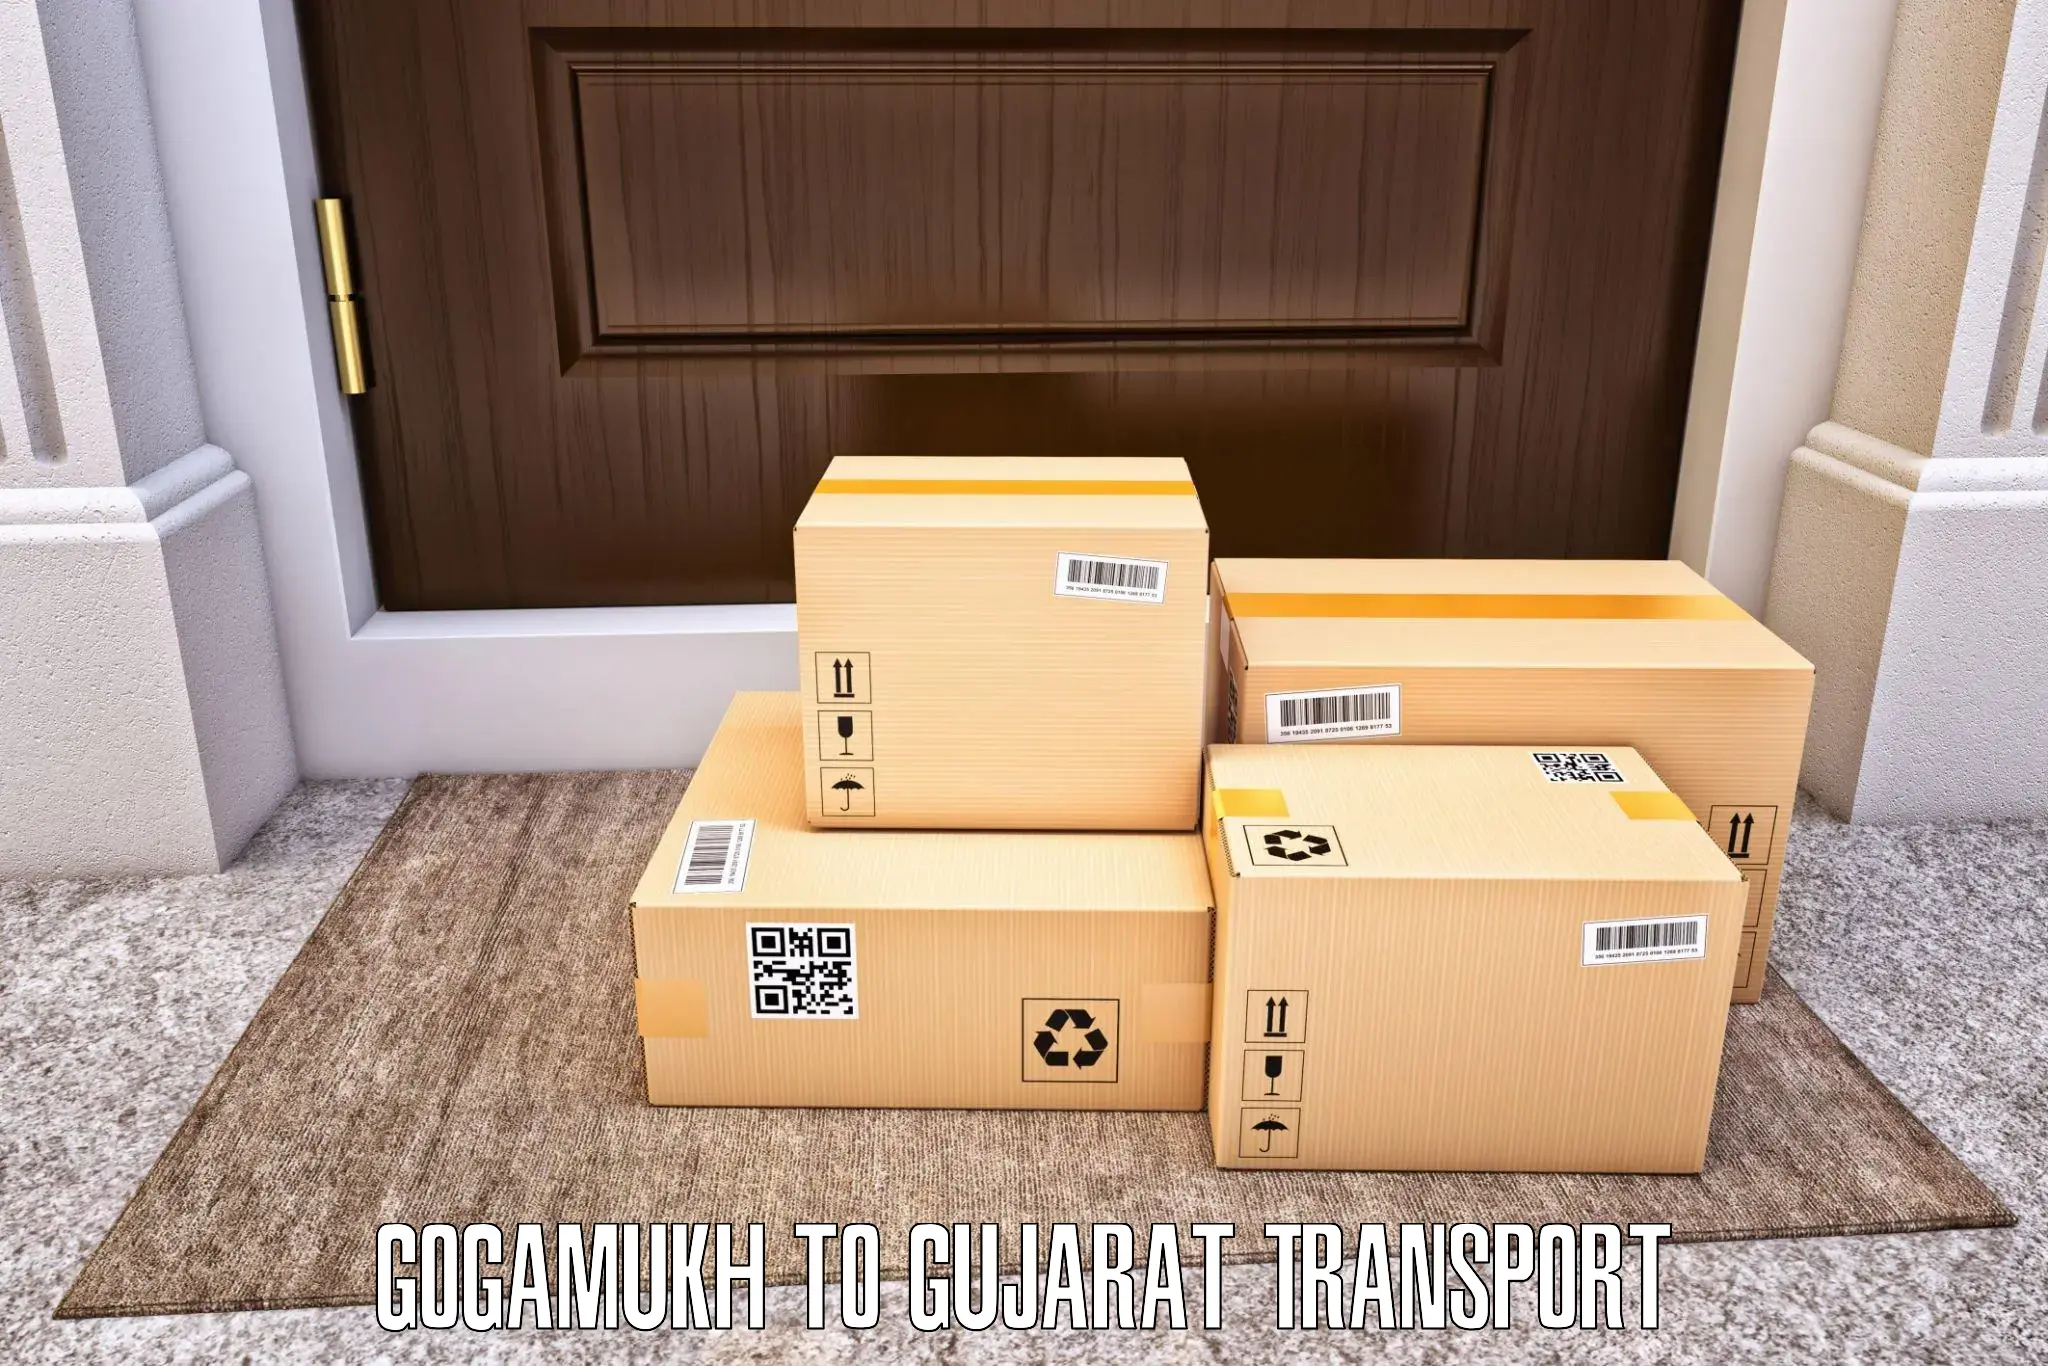 International cargo transportation services Gogamukh to Mahesana